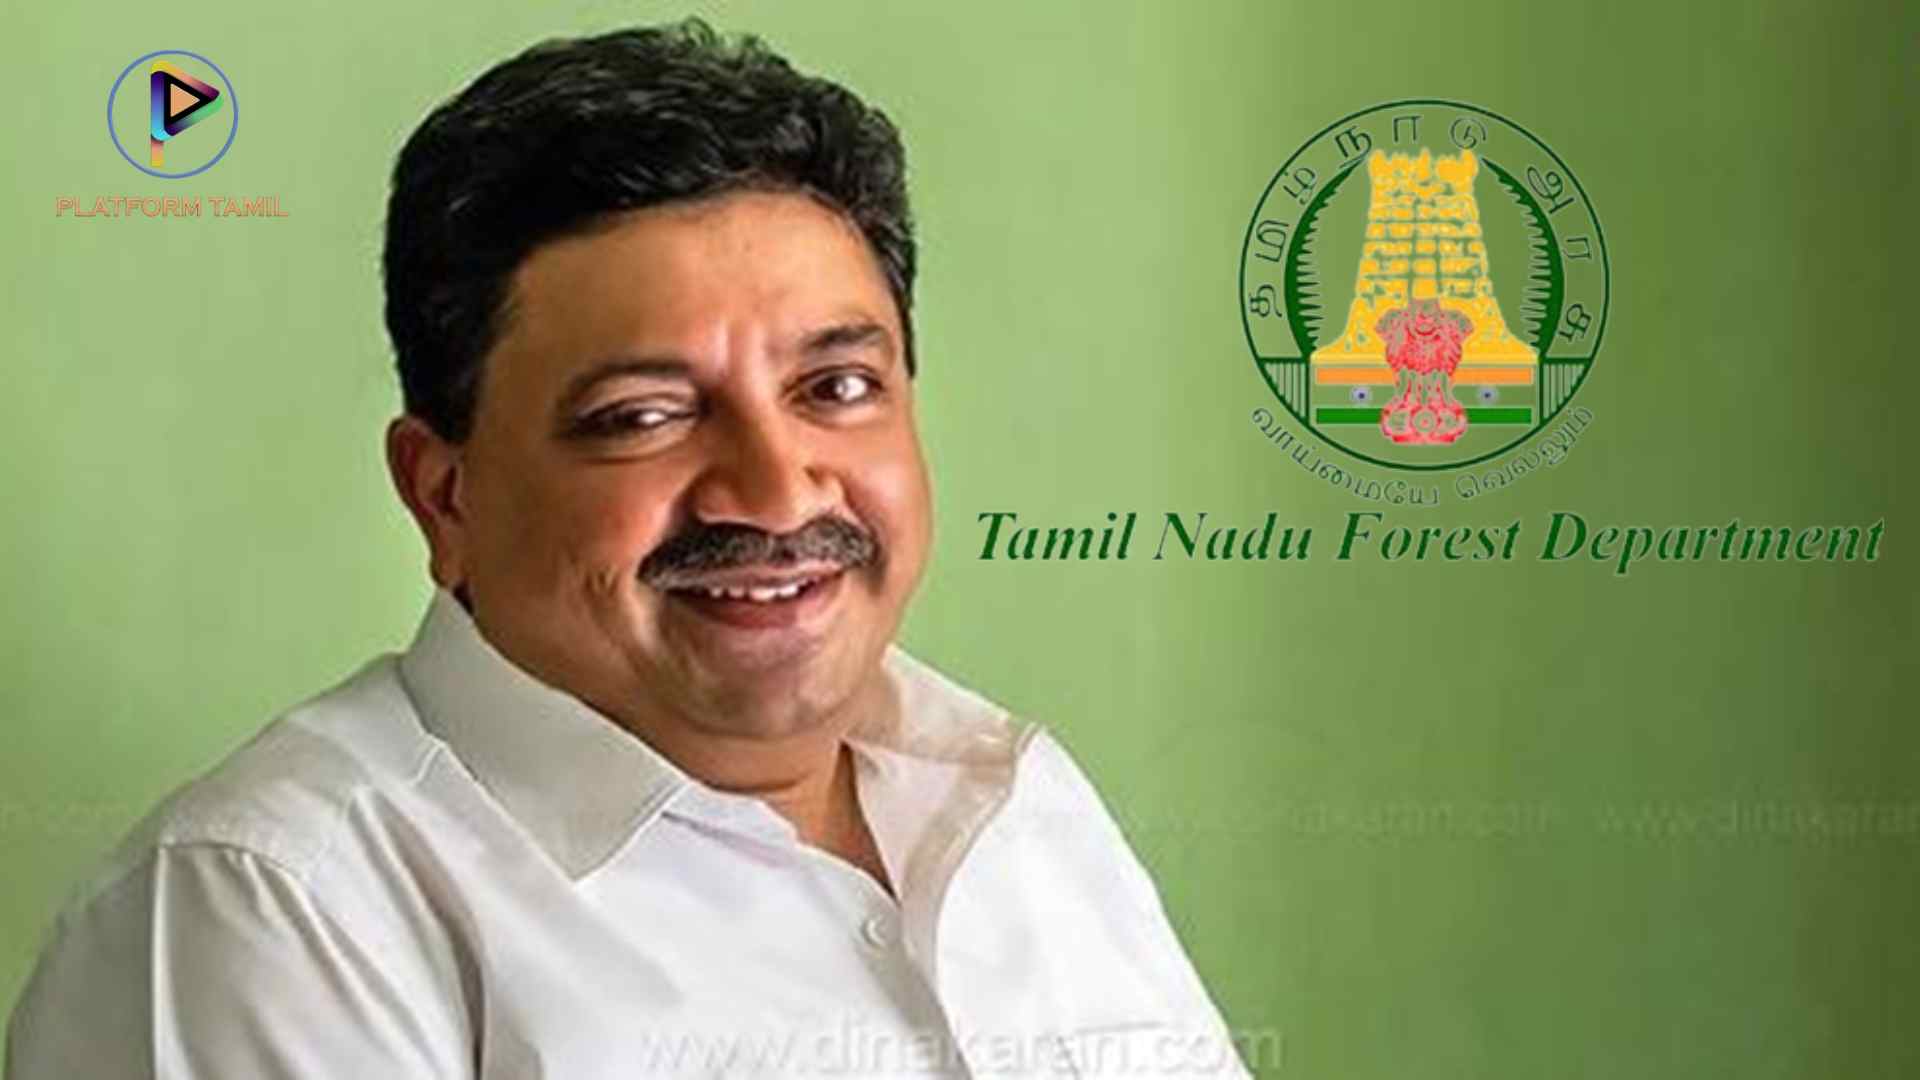 Forest Department Minister - Platform tamil